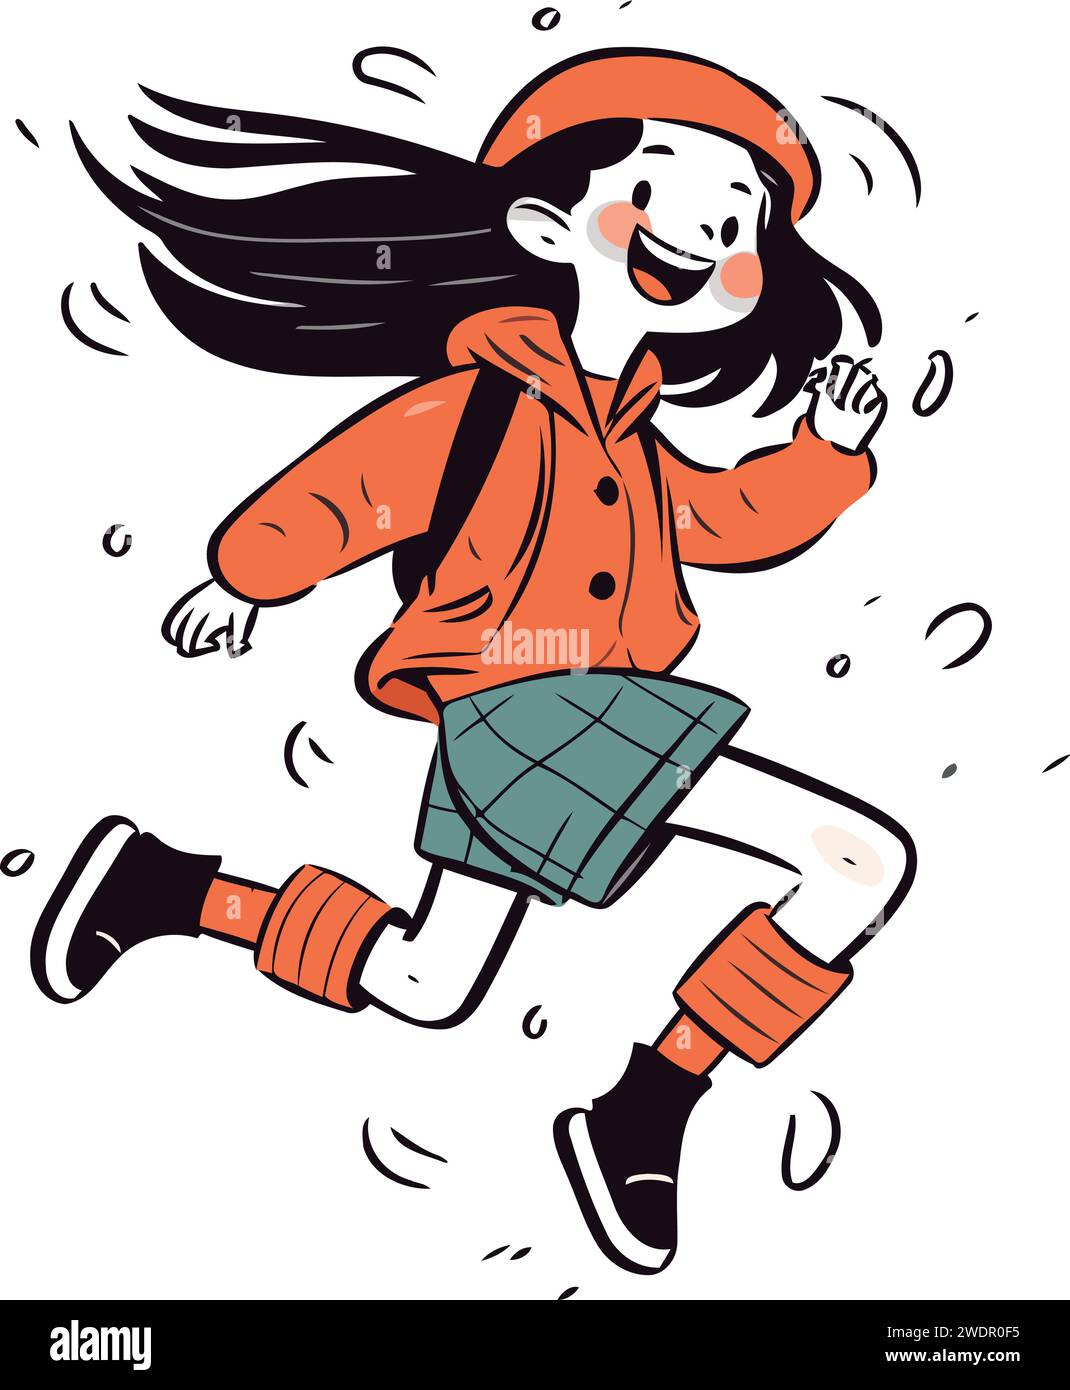 Vektor-Illustration eines Mädchens in einem roten Mantel, das springt und läuft. Stock Vektor